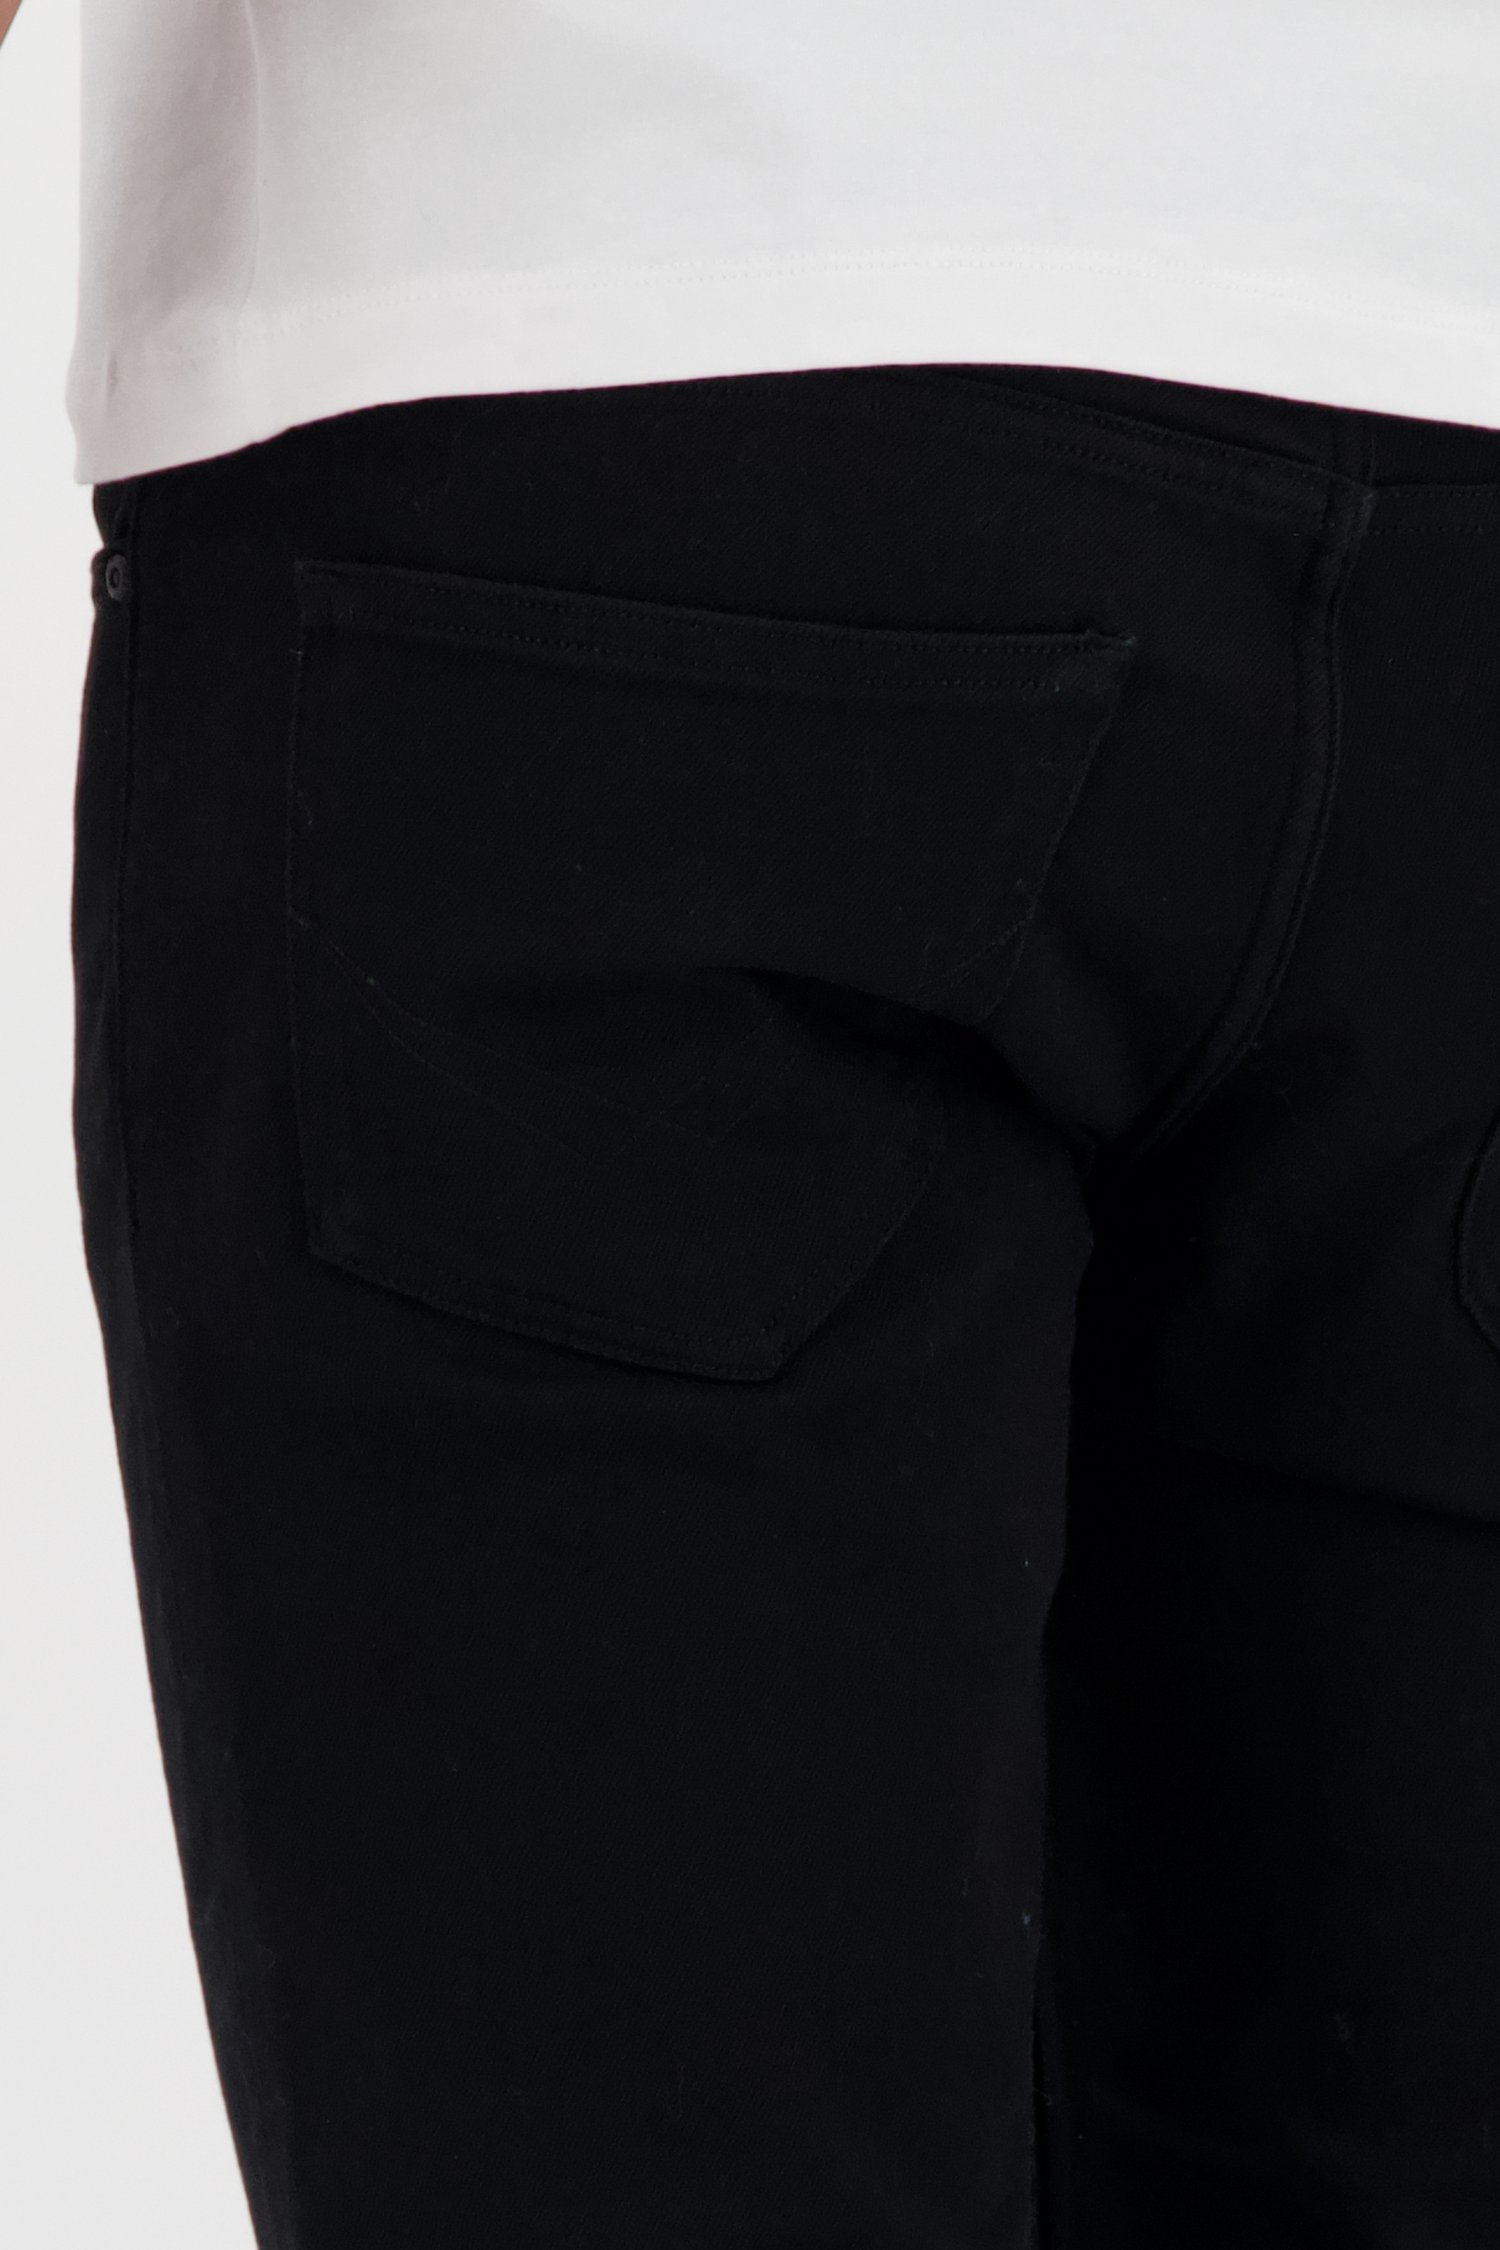 Zwarte jeans - Lars - slim fit - L32 van Liberty Island Denim voor Heren